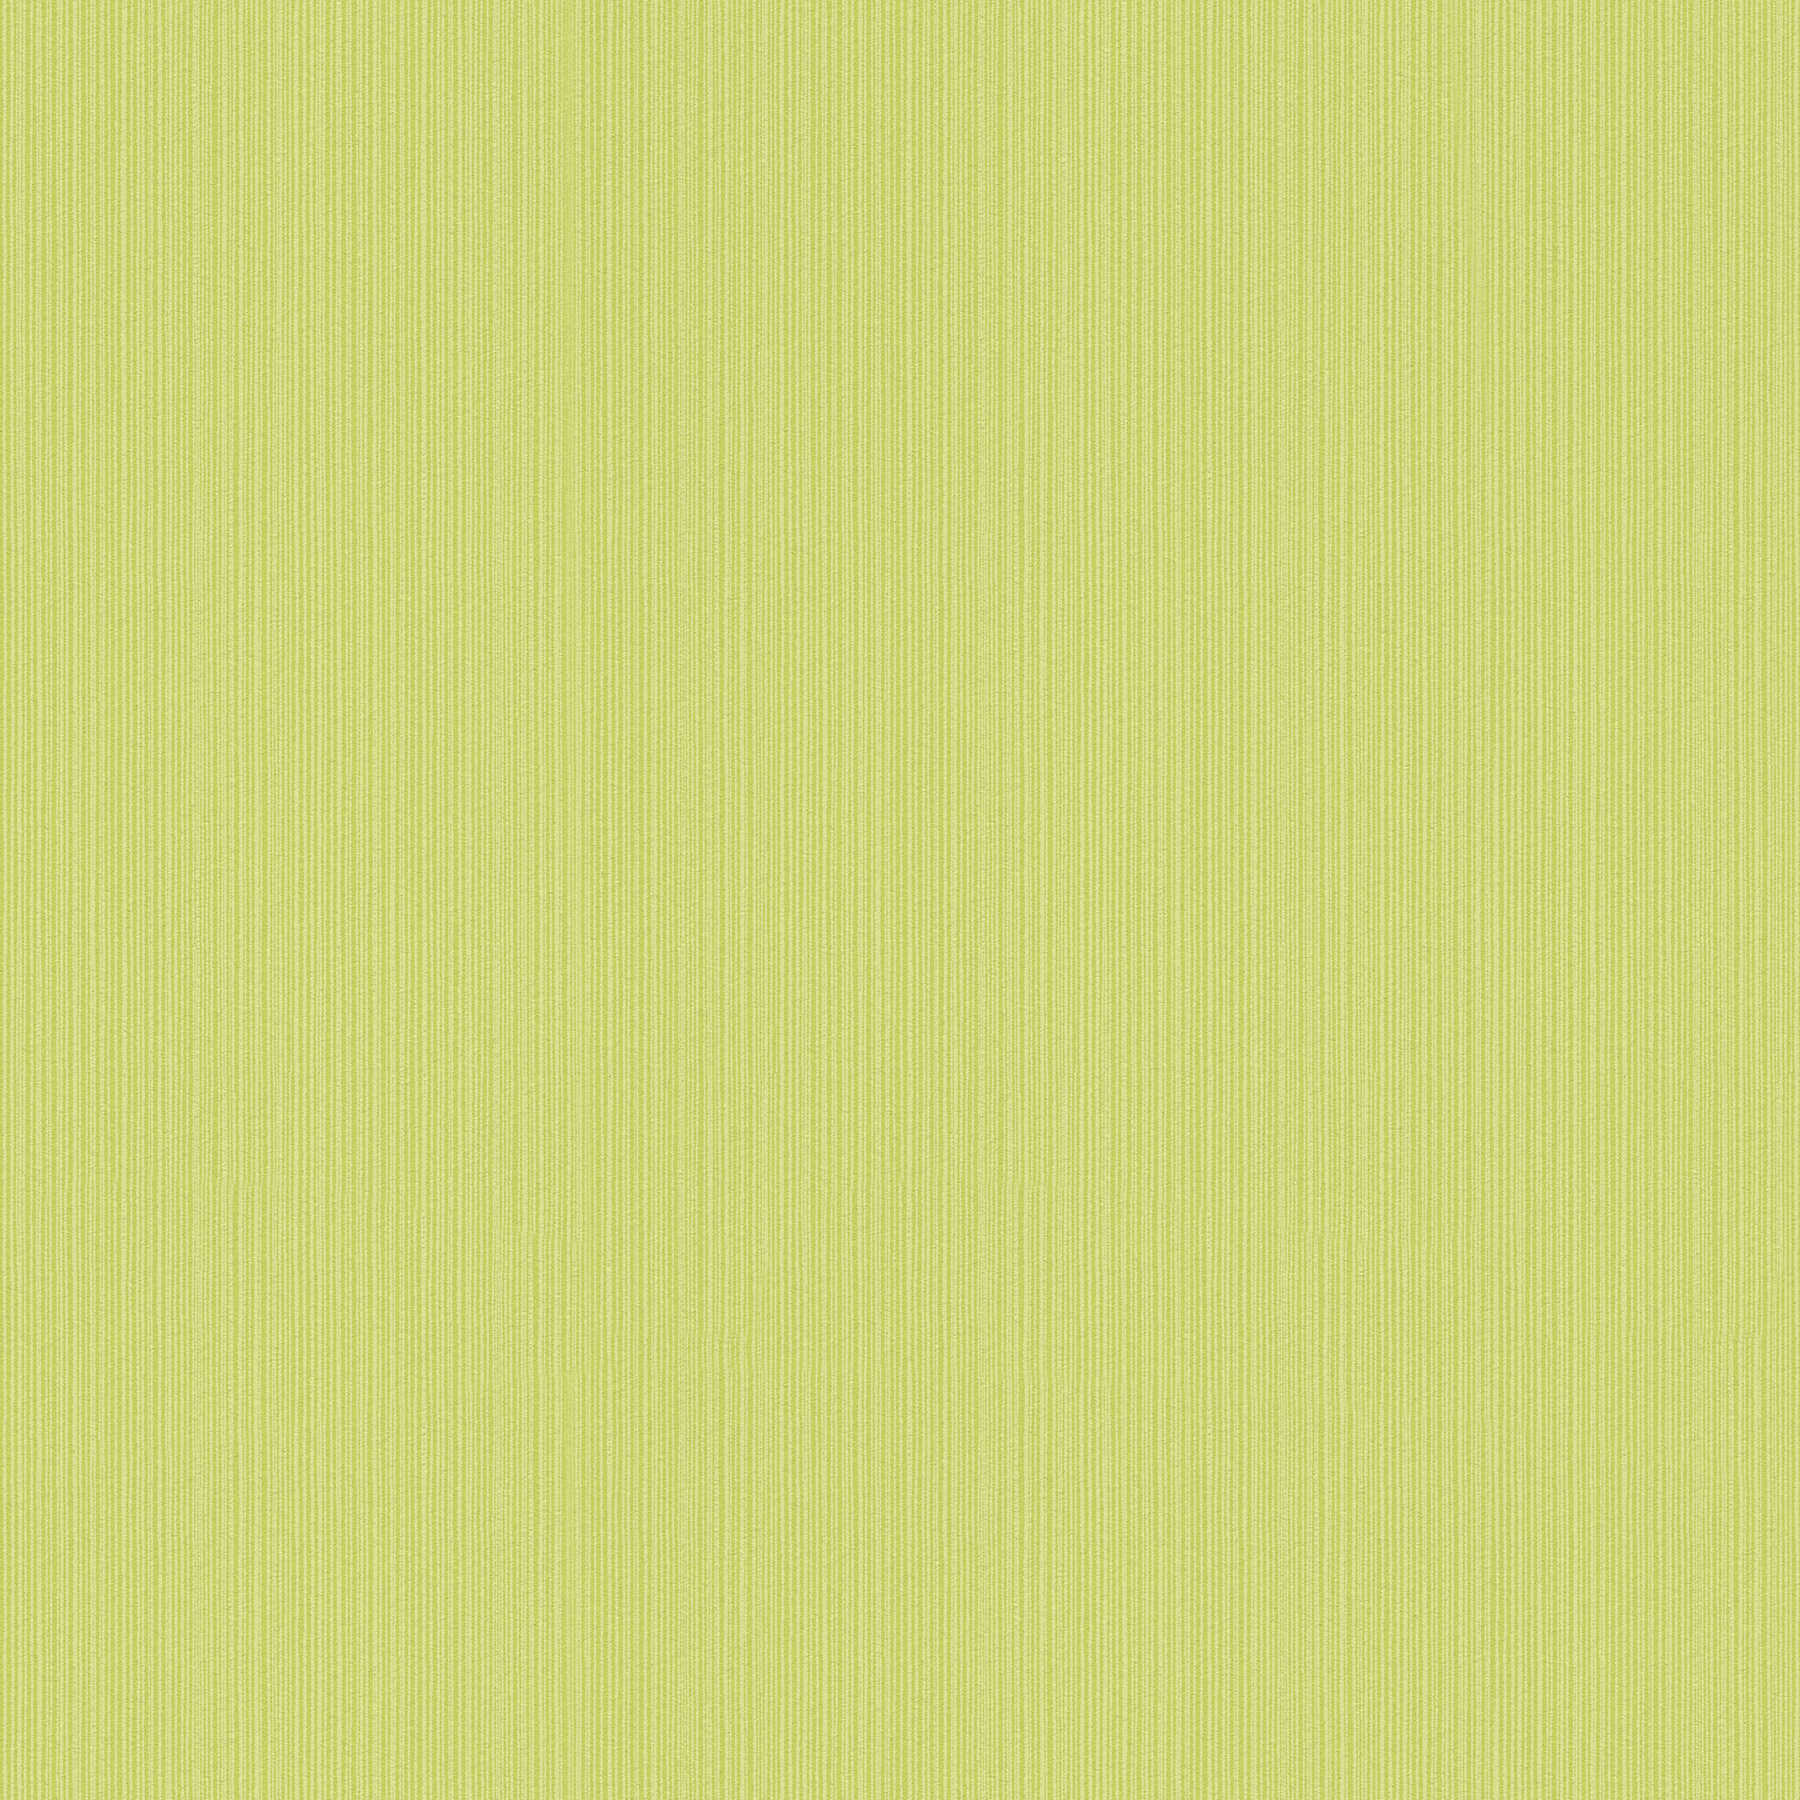 Carta da parati verde lime uni, con effetto texture a righe
